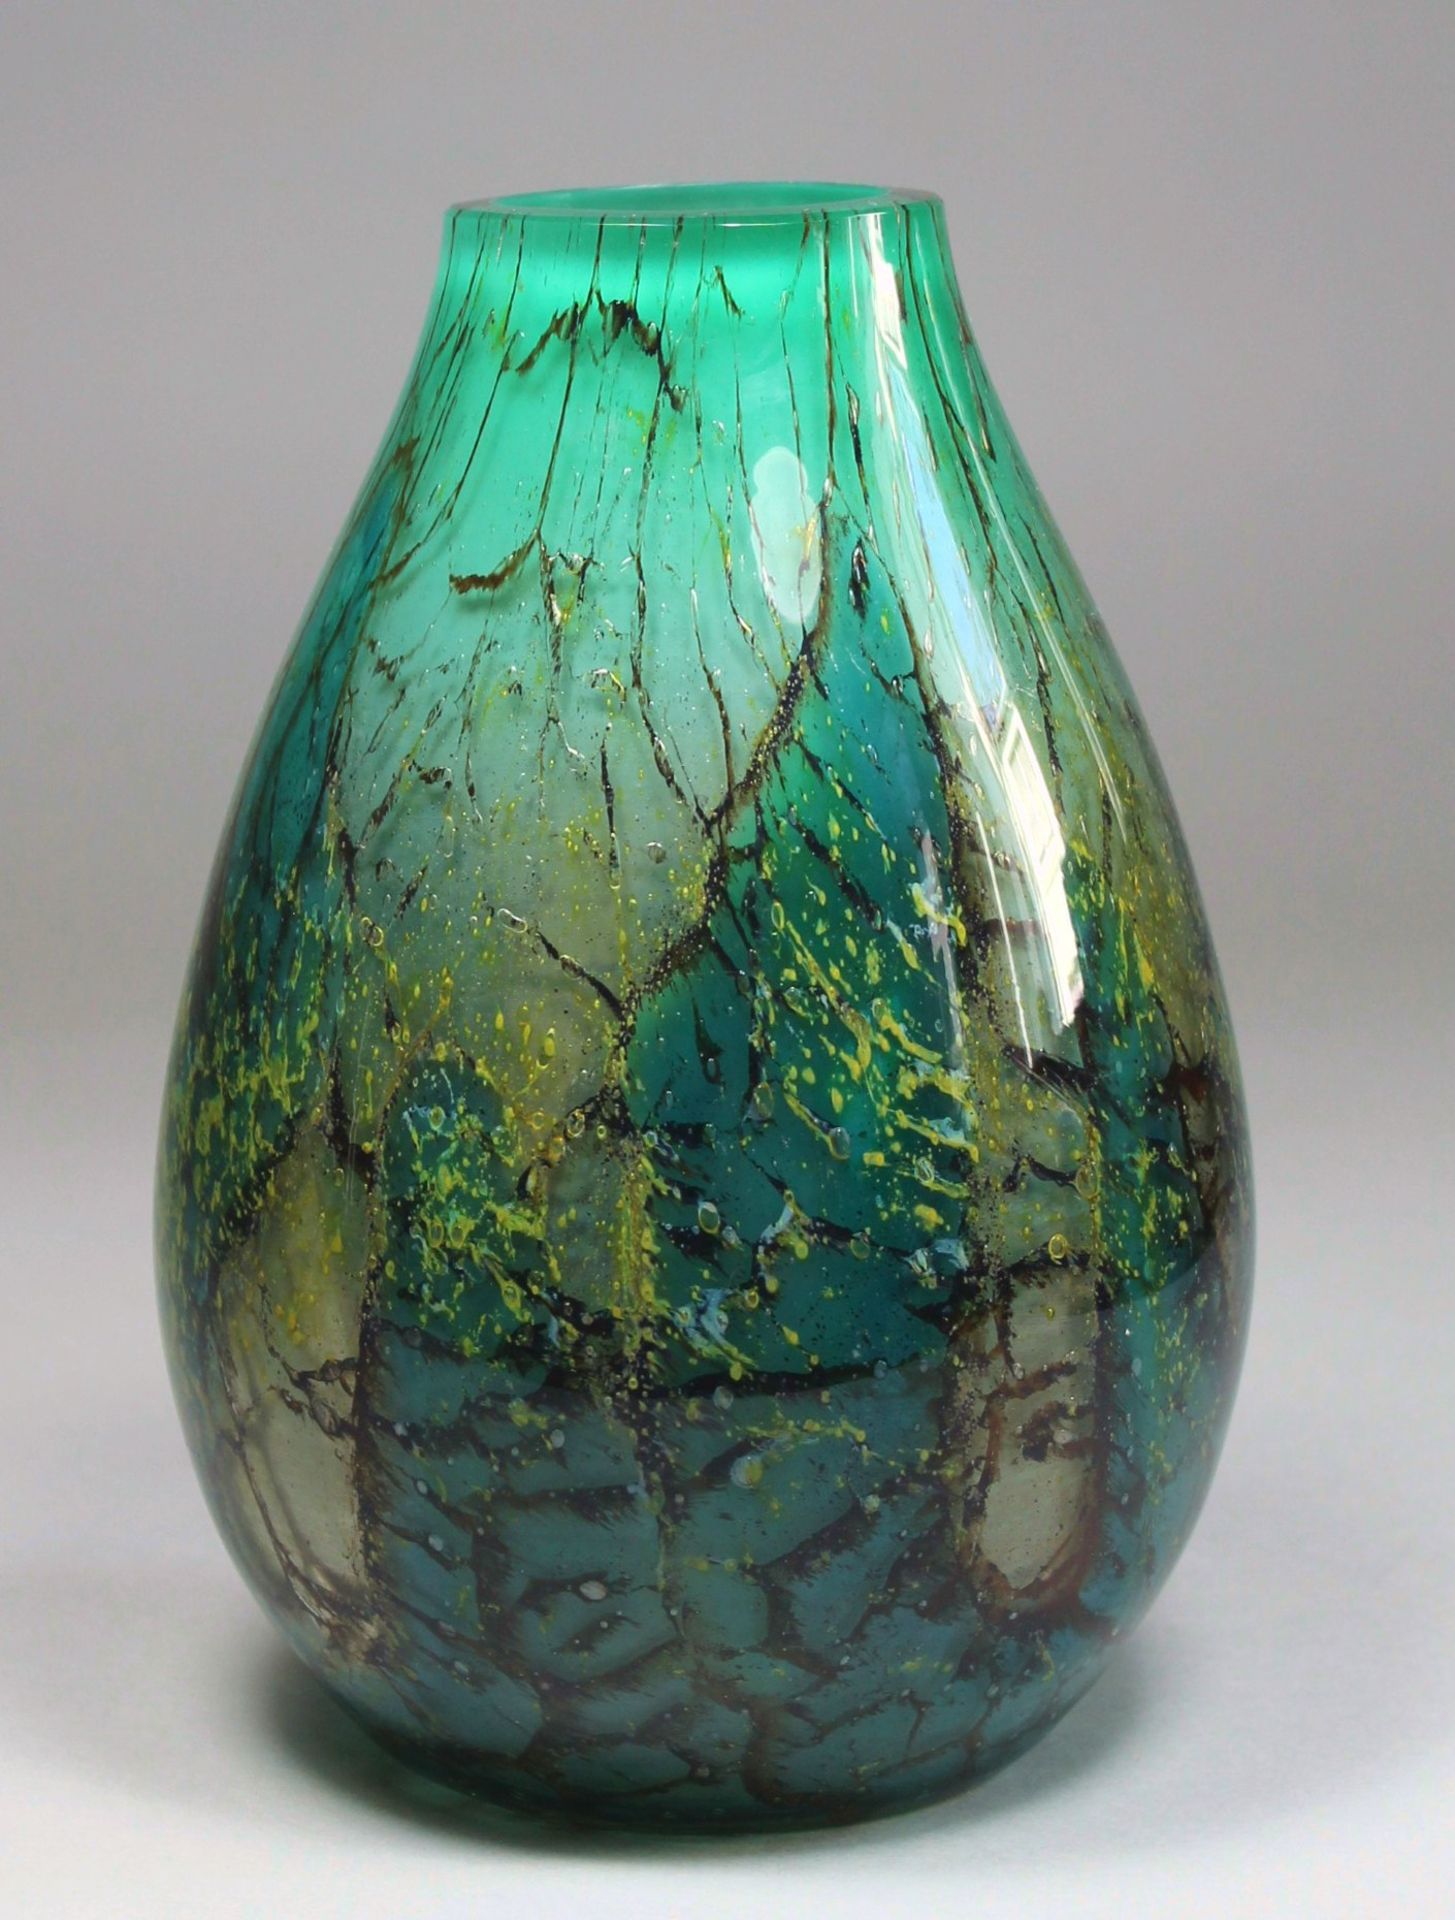 1 Vase Glas, Klarglas mit grünen, braunen und gelben Einschmelzungen, schwere Ausführung, Stand